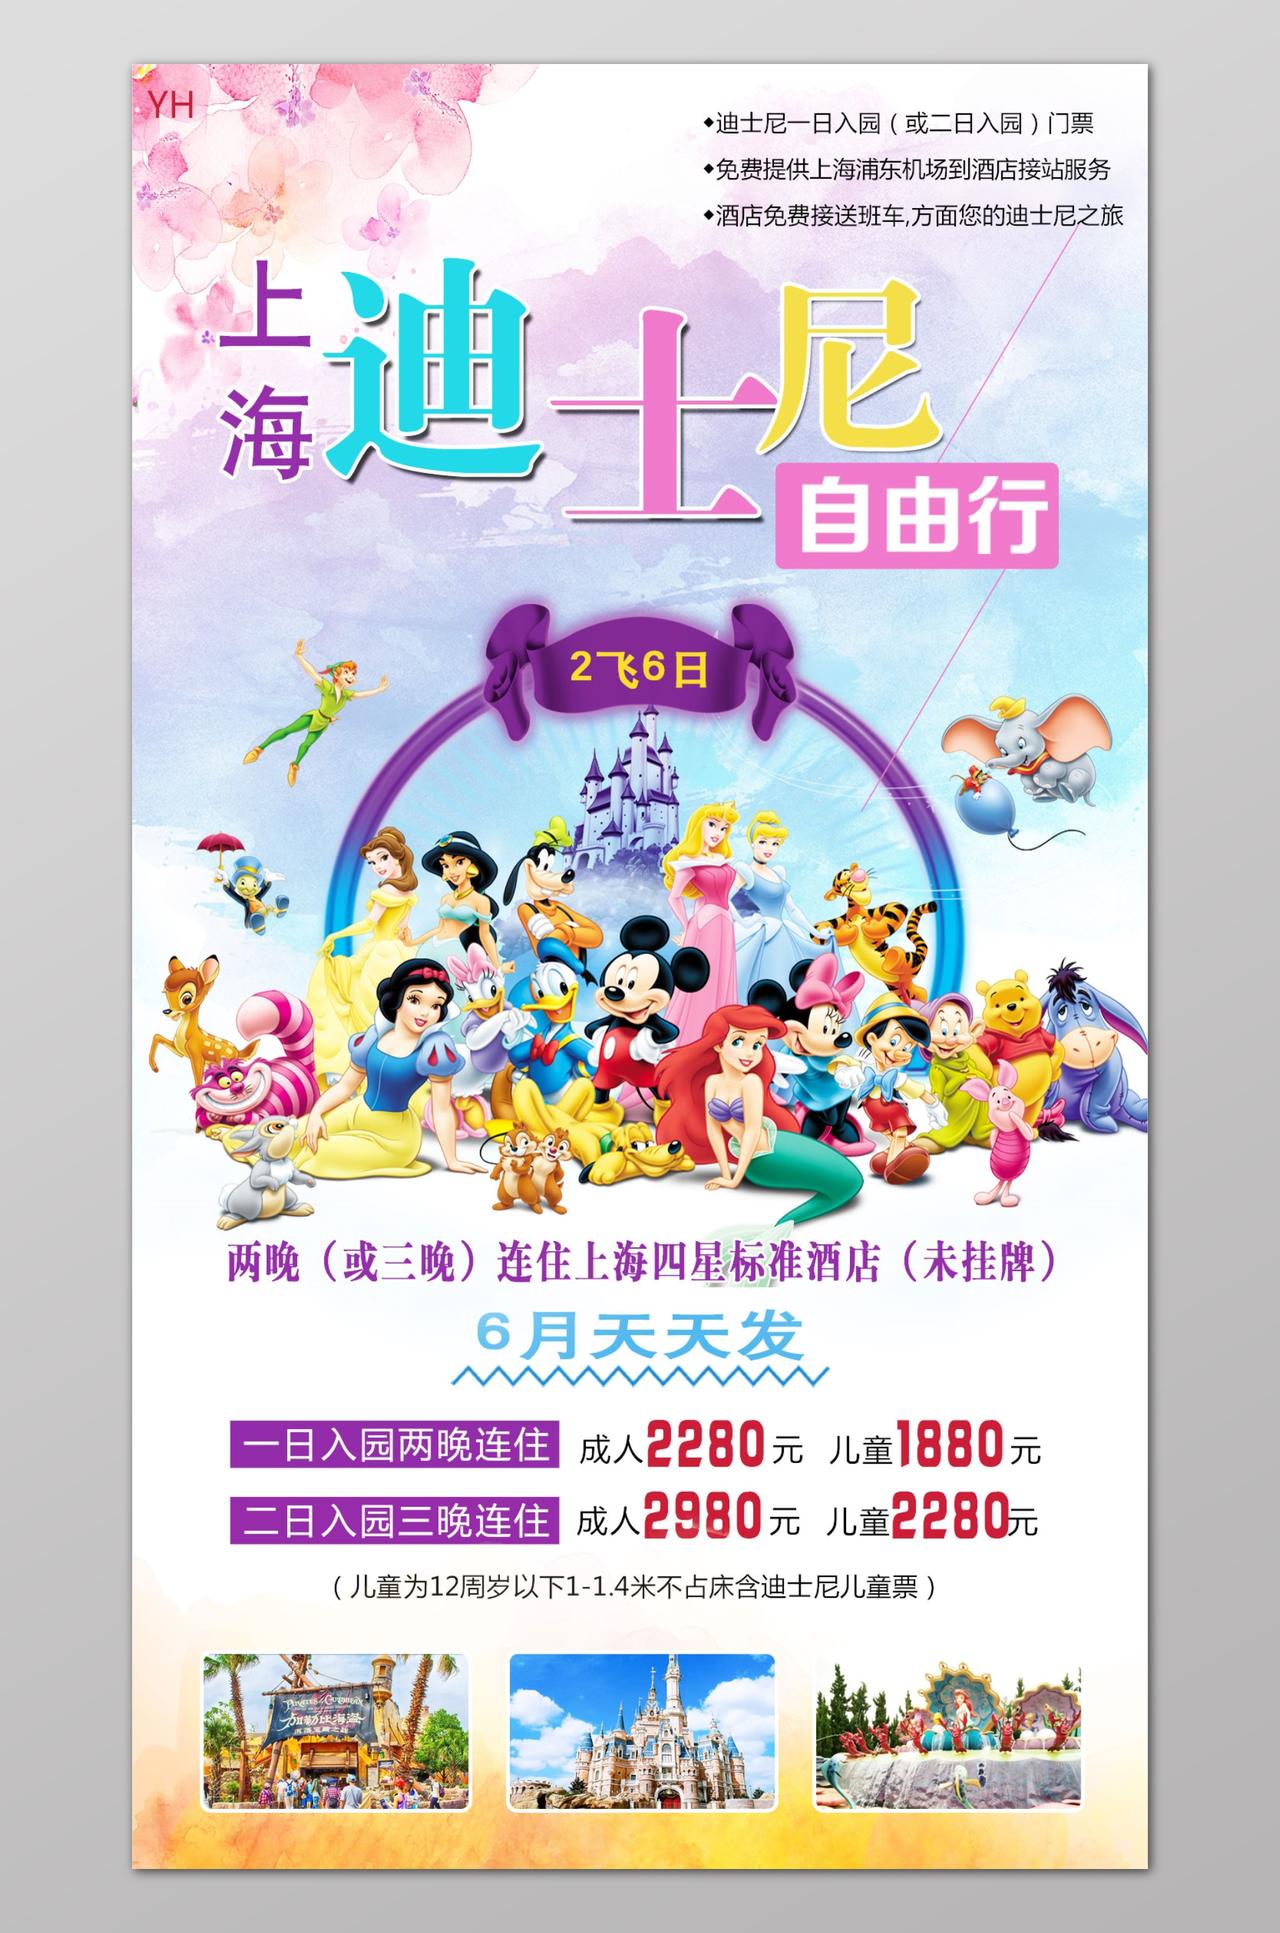 上海旅游上海印象迪士尼乐意广告海报宣传设计